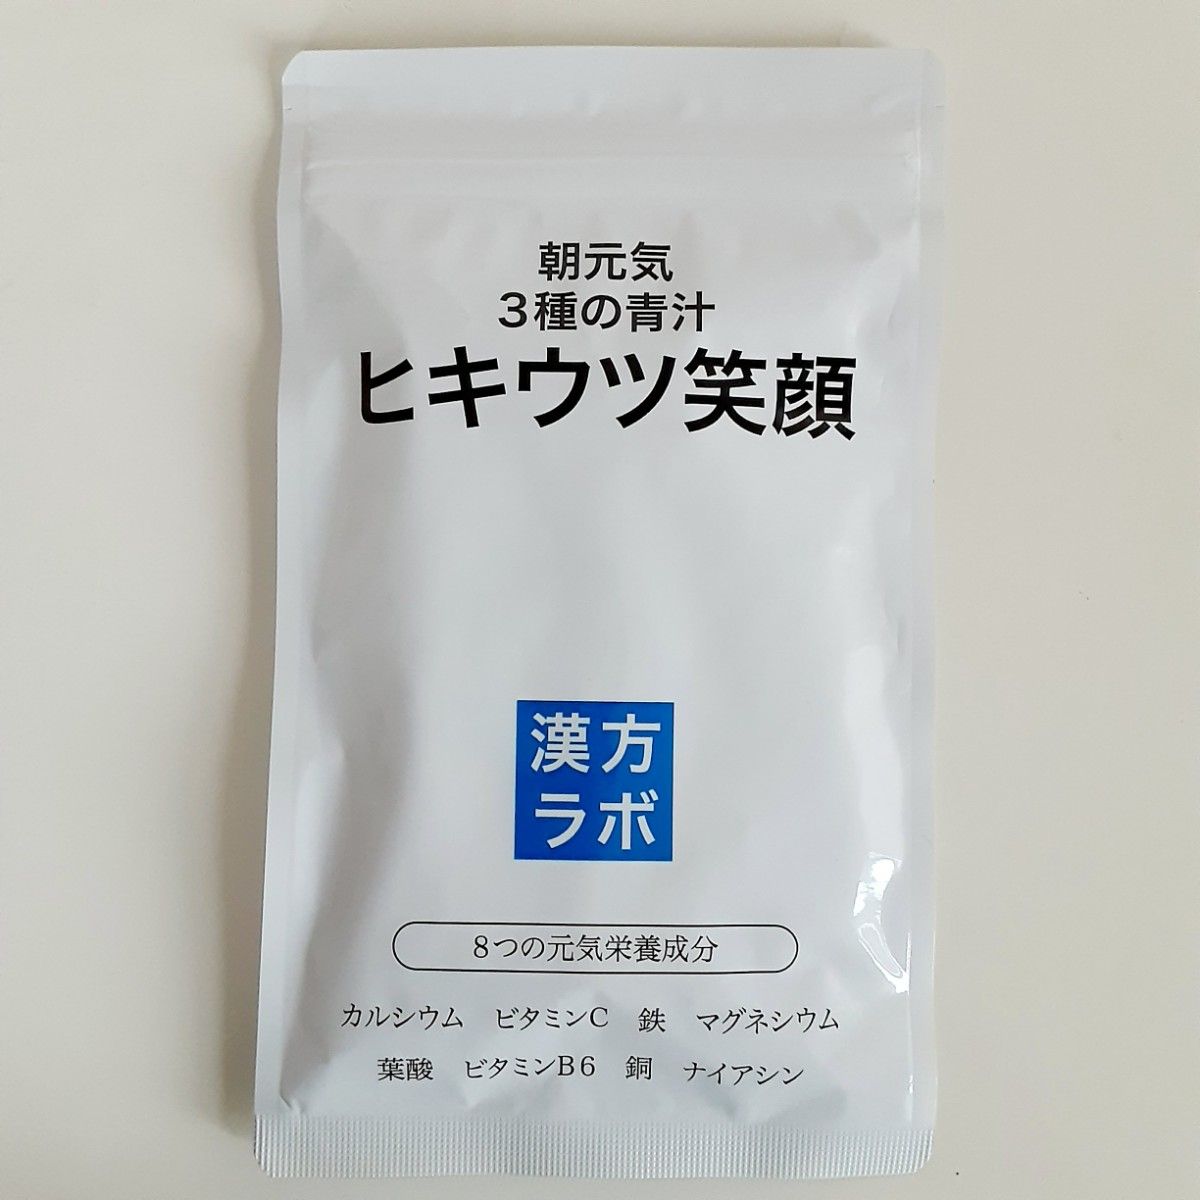 評価 ヒキウツ笑顔 186粒 朝元気 3種の青汁 新日本漢方ラボ カルシウム